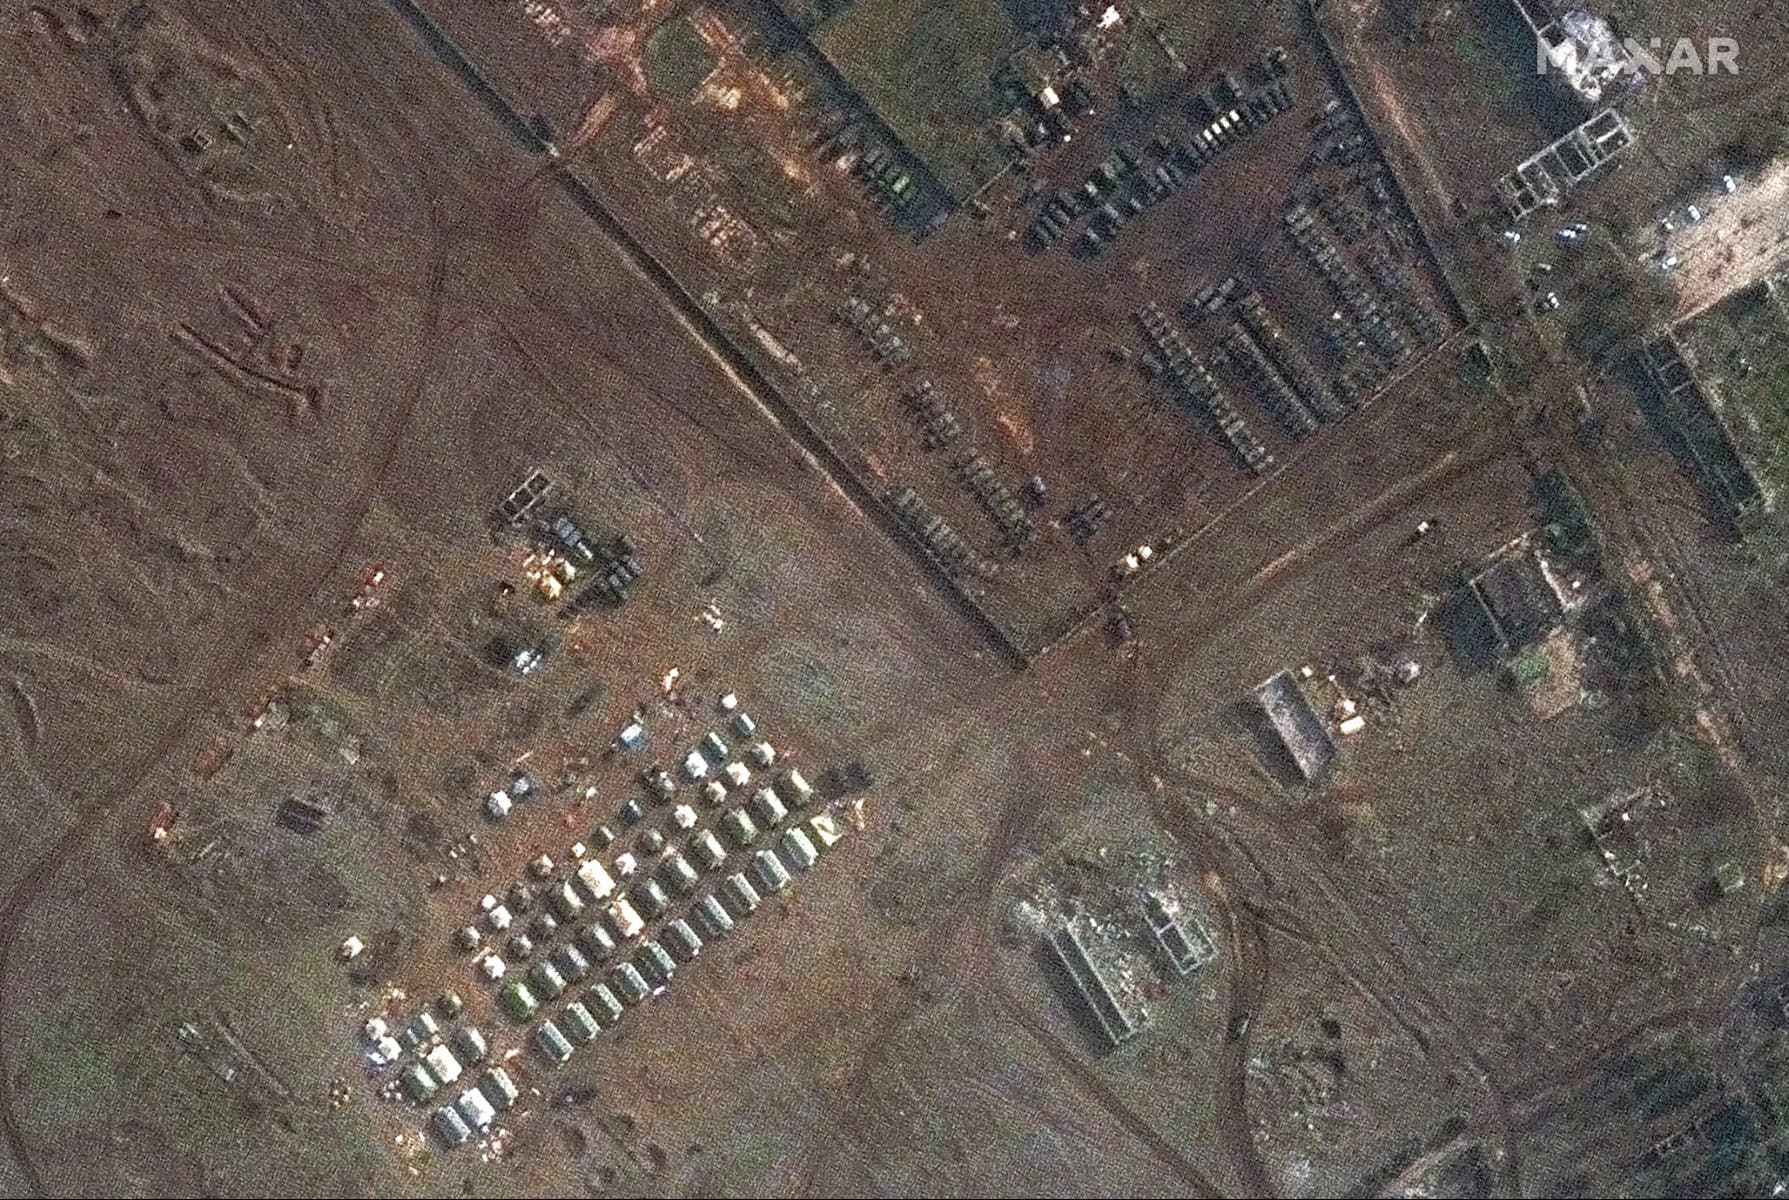 صورة مأخوذة بواسطة الأقمار الصناعية تظهر مجموعات قتالية روسية وخيام في شبه جزيرة القرم